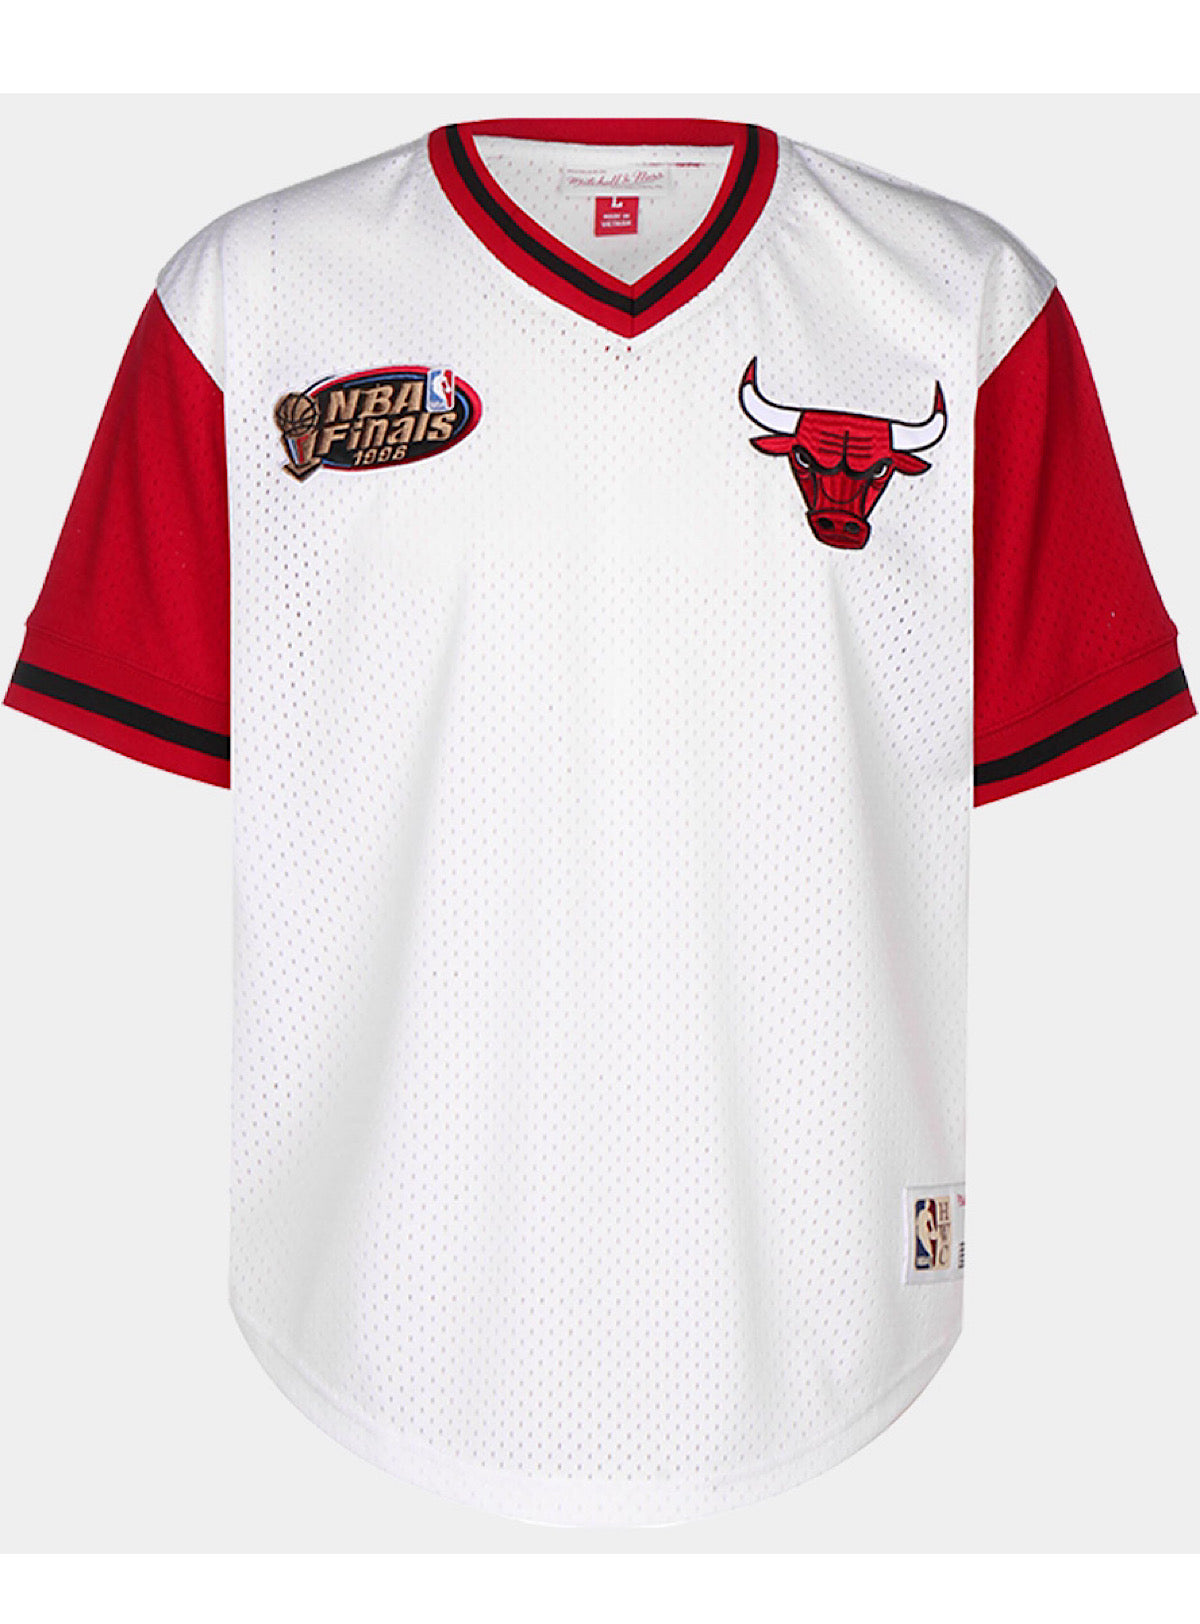 Mitchell & Ness Chicago Bulls NBA Finals 1996 T-Shirt Black